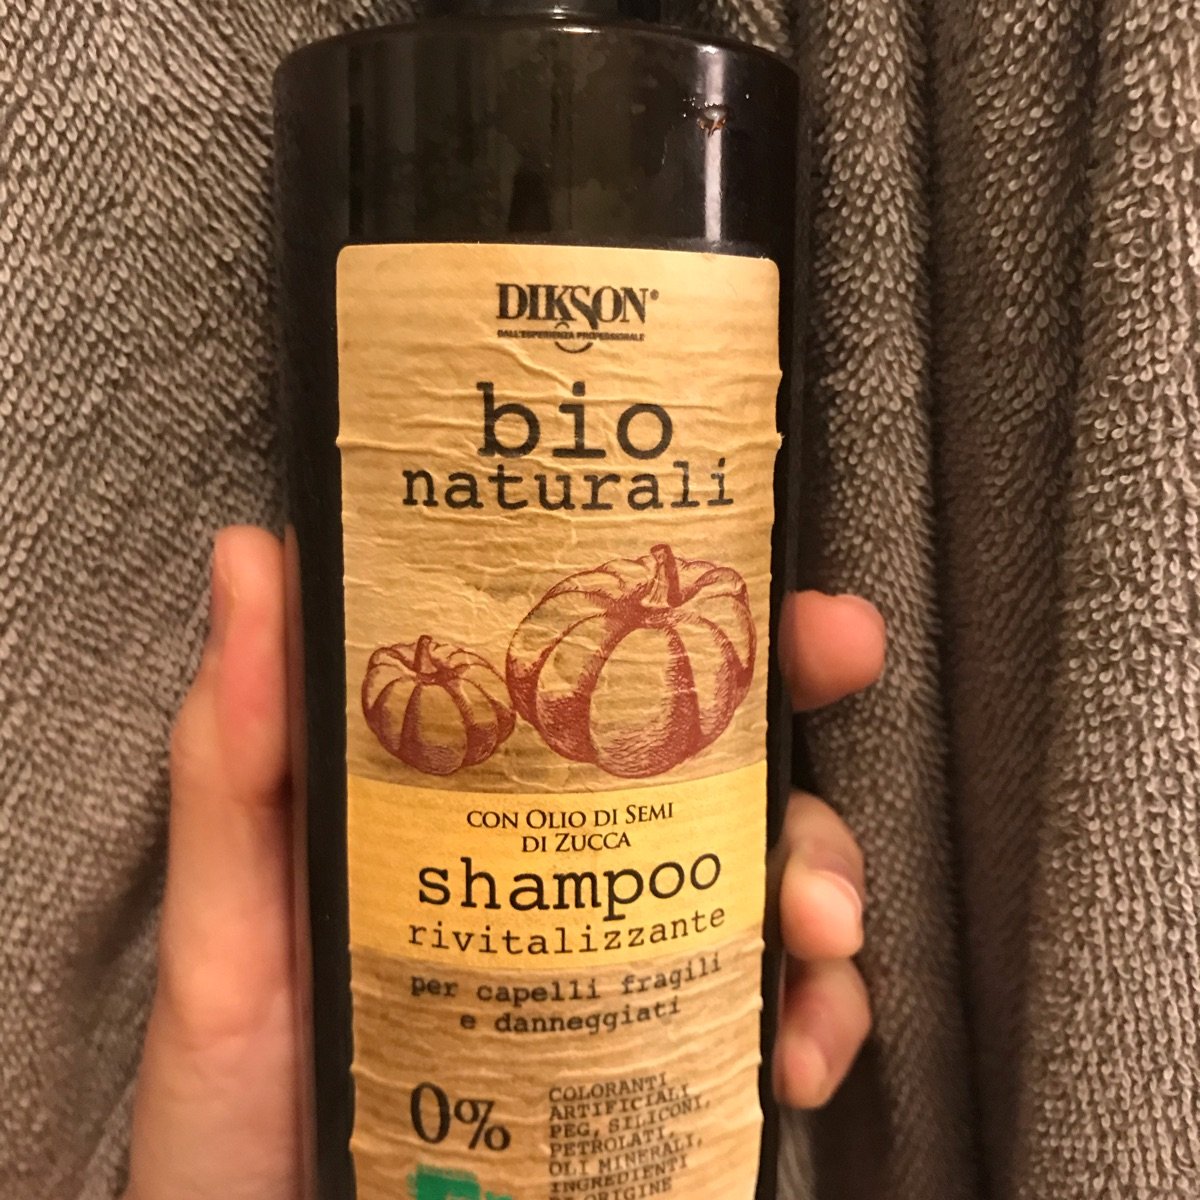 Dikson Shampoo con olio di semi di zucca Reviews | abillion